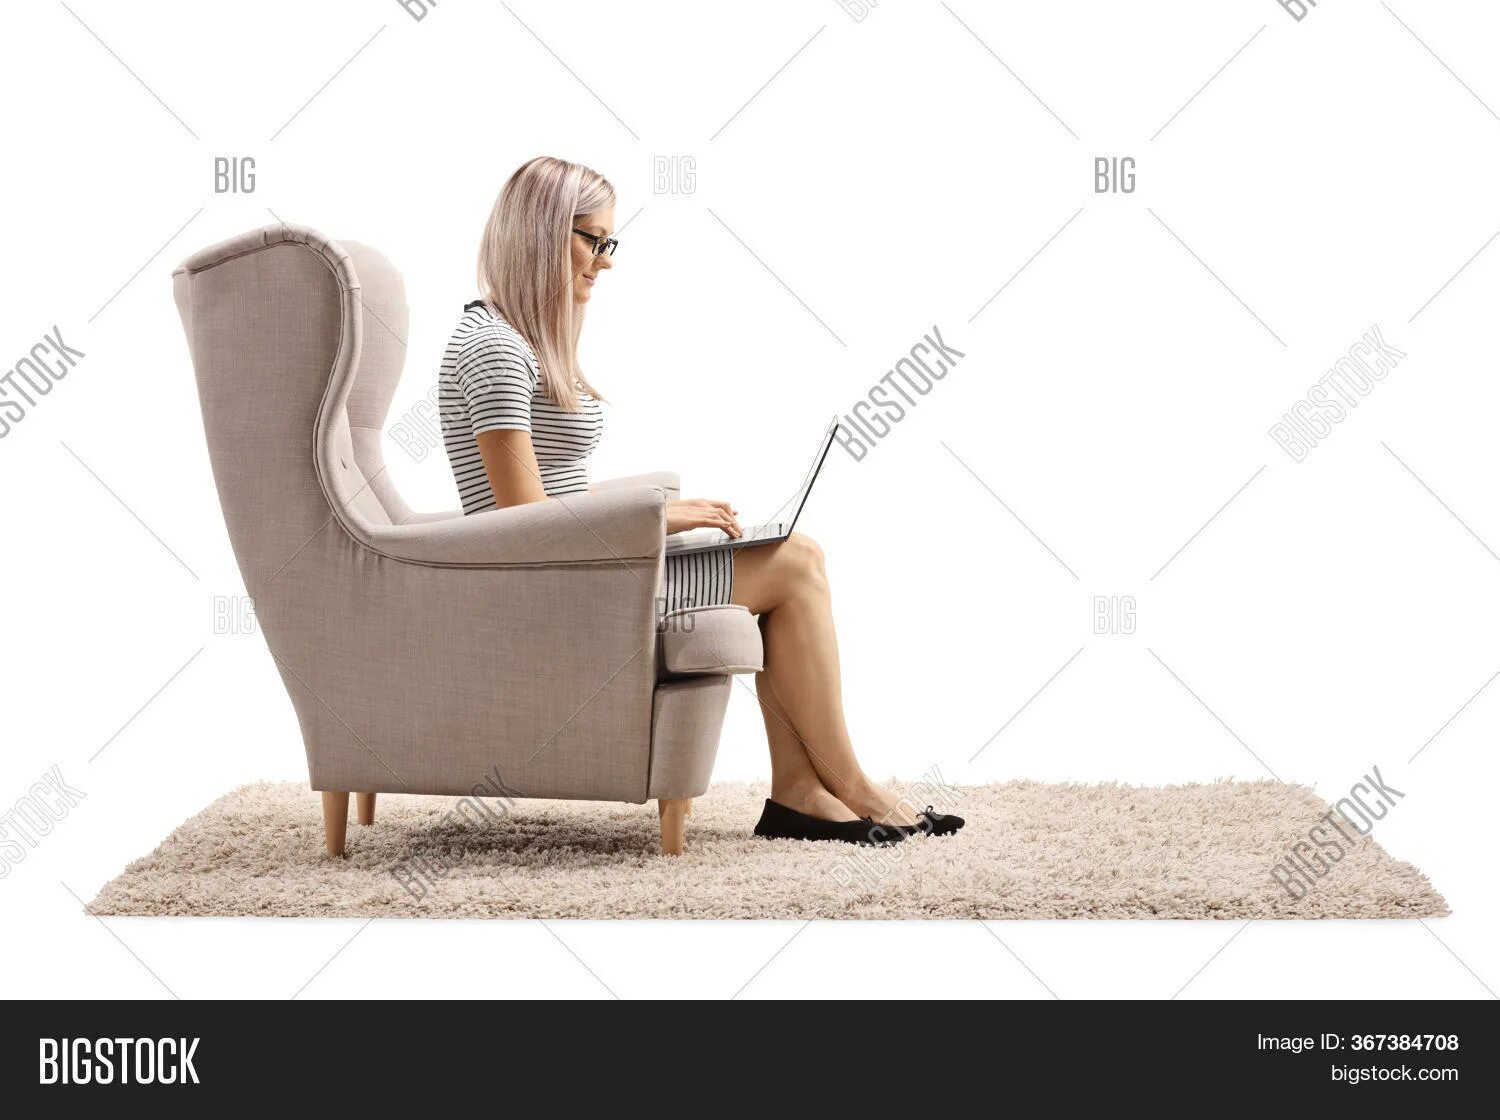 Женщина в кресле с ноутбуком. Женщина сидит в кресле. Женщина в кресле, задумалась. Девушка сидит в кресле с ноутбуком.